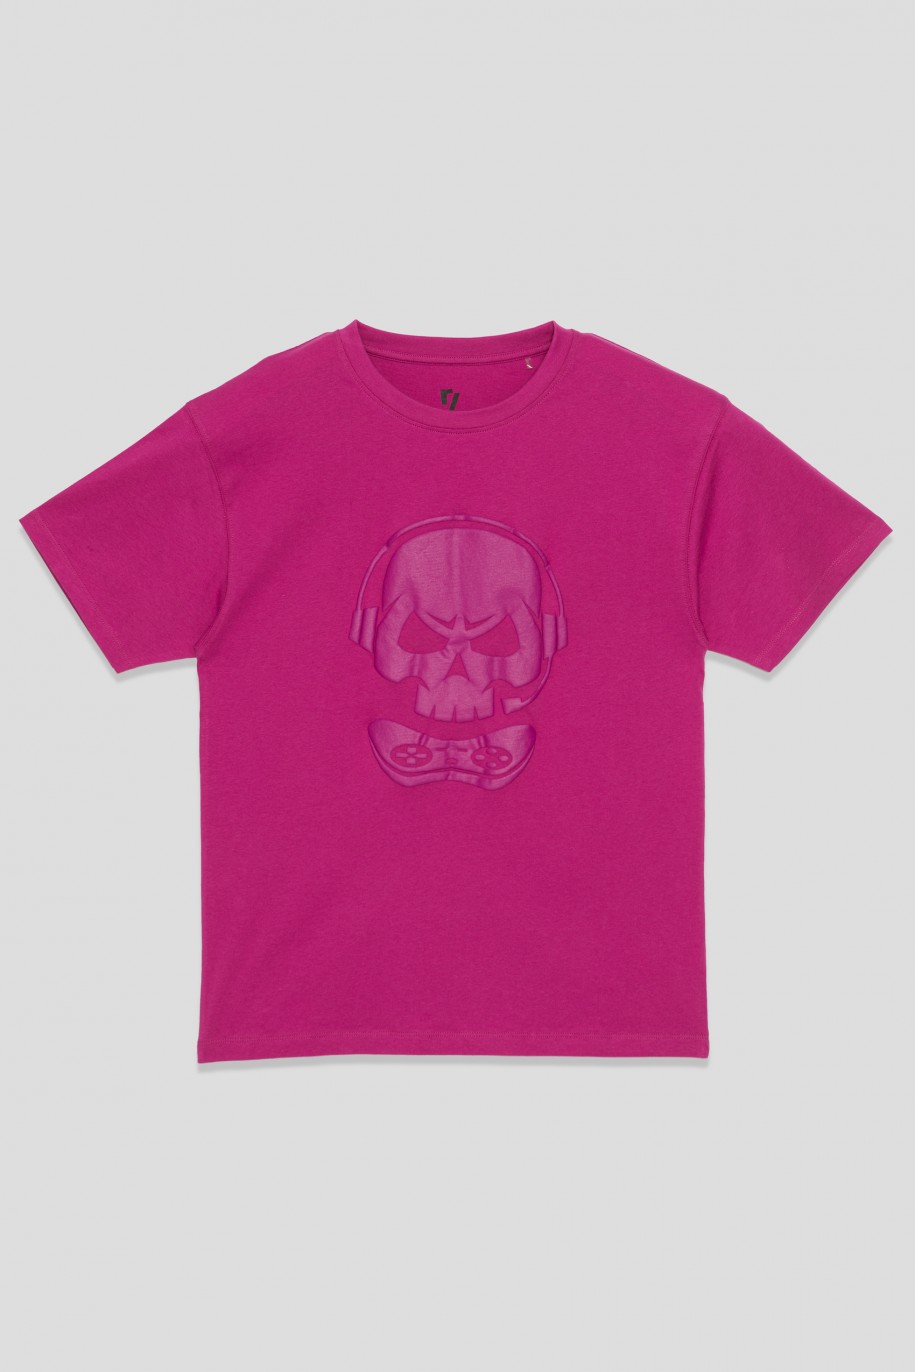 Fioletowy t-shirt z nadrukiem SKULL dla chłopaka - 33528